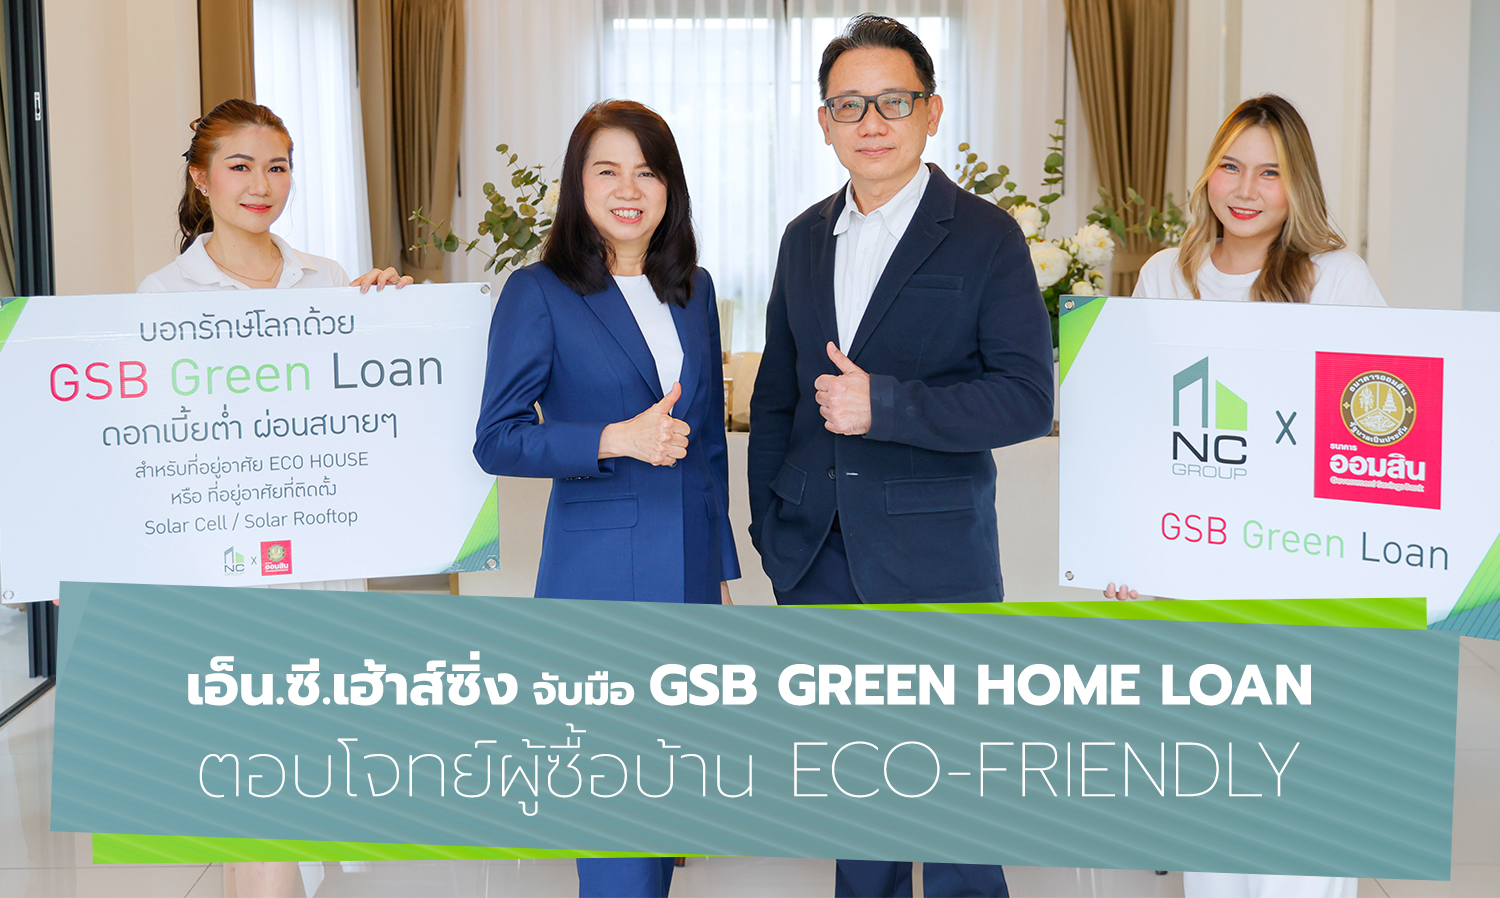 เอ็น.ซี.เฮ้าส์ซิ่ง จับมือ GSB Green Home Loan ตอบโจทย์ผู้ซื้อบ้าน Eco-Friendly